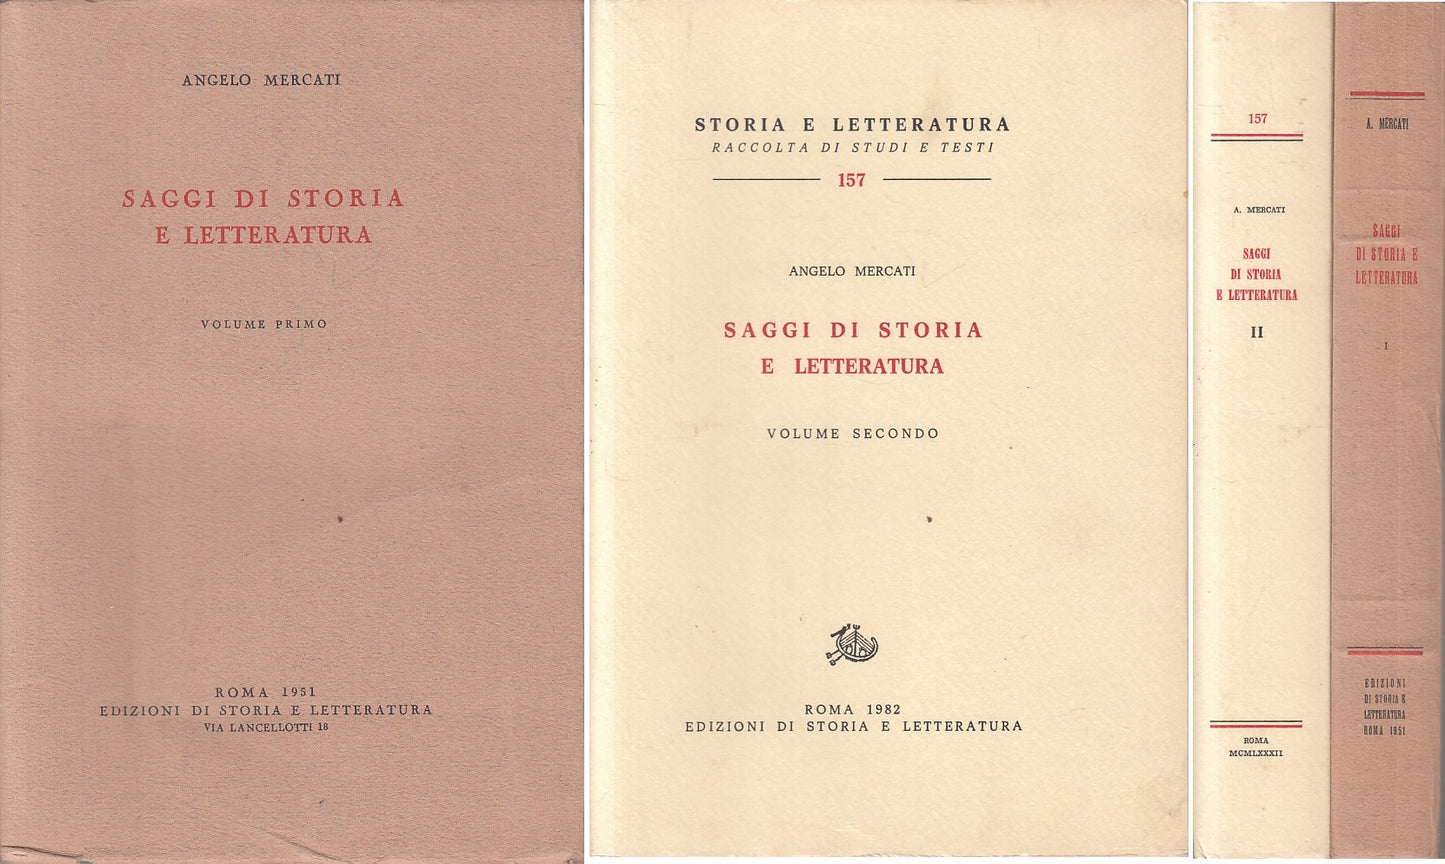 LS- SAGGI DI STORIA E LETTERATURA 2 VOLUMI - MERCATI - ROMA --- 1951 - B - ZFS12